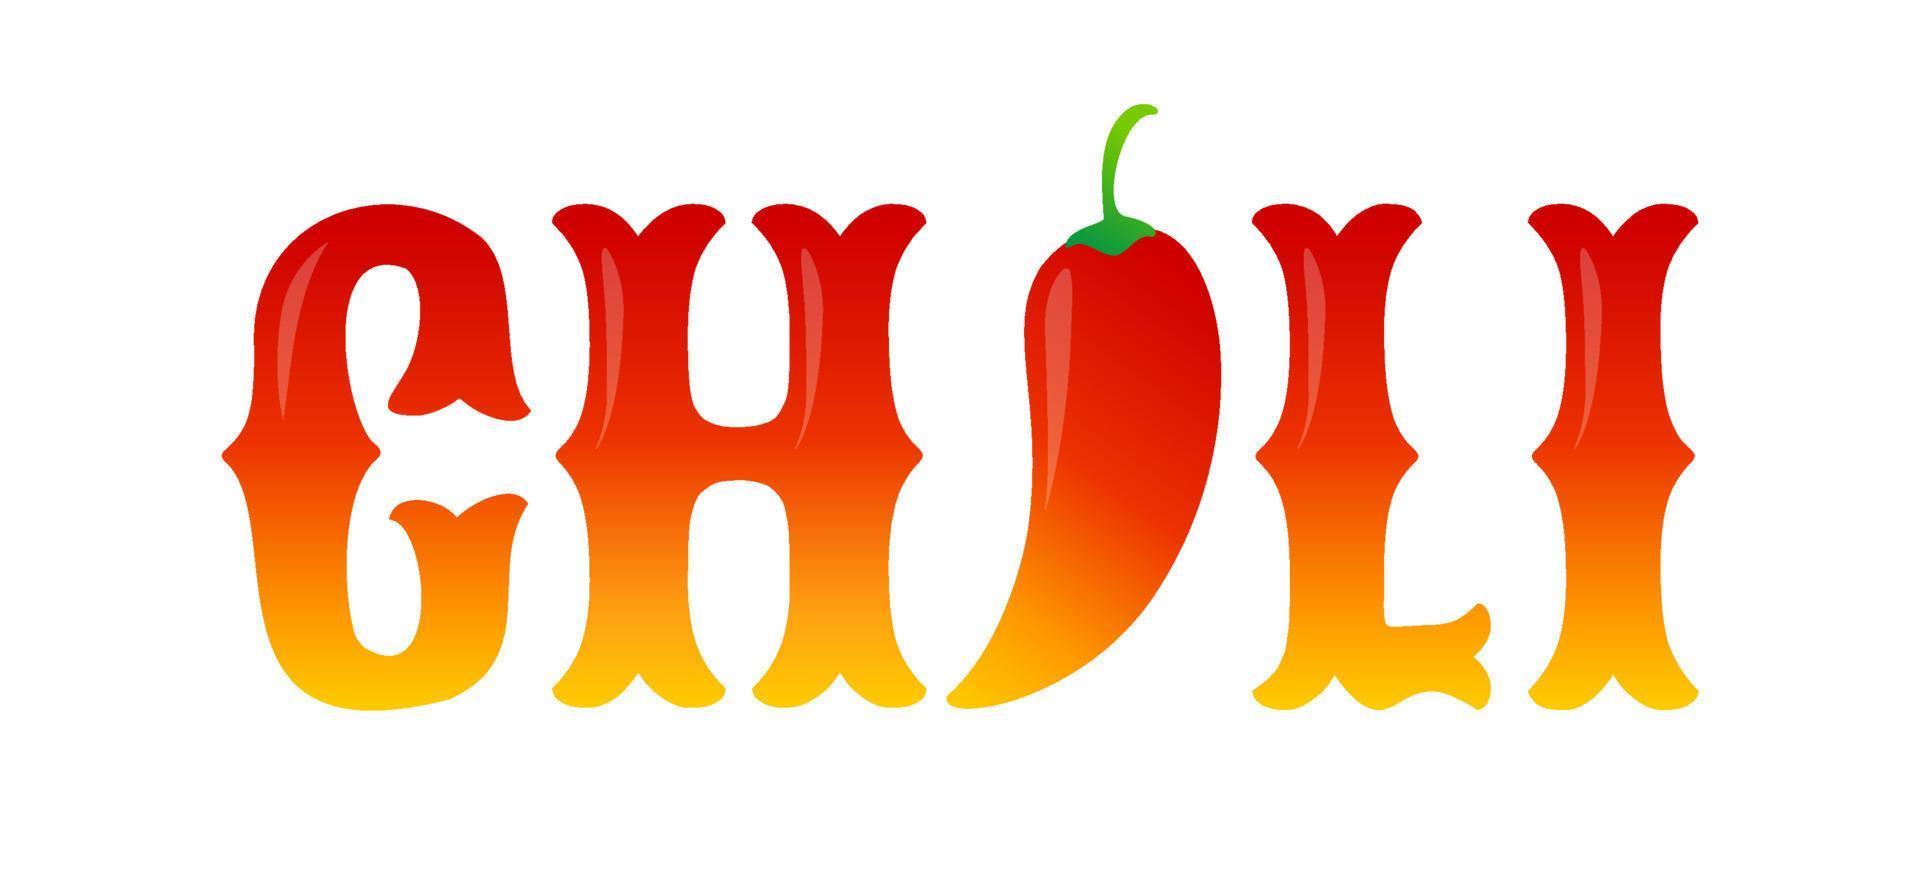 typographie vectorielle avec piment rouge. nourriture épicée vecteur